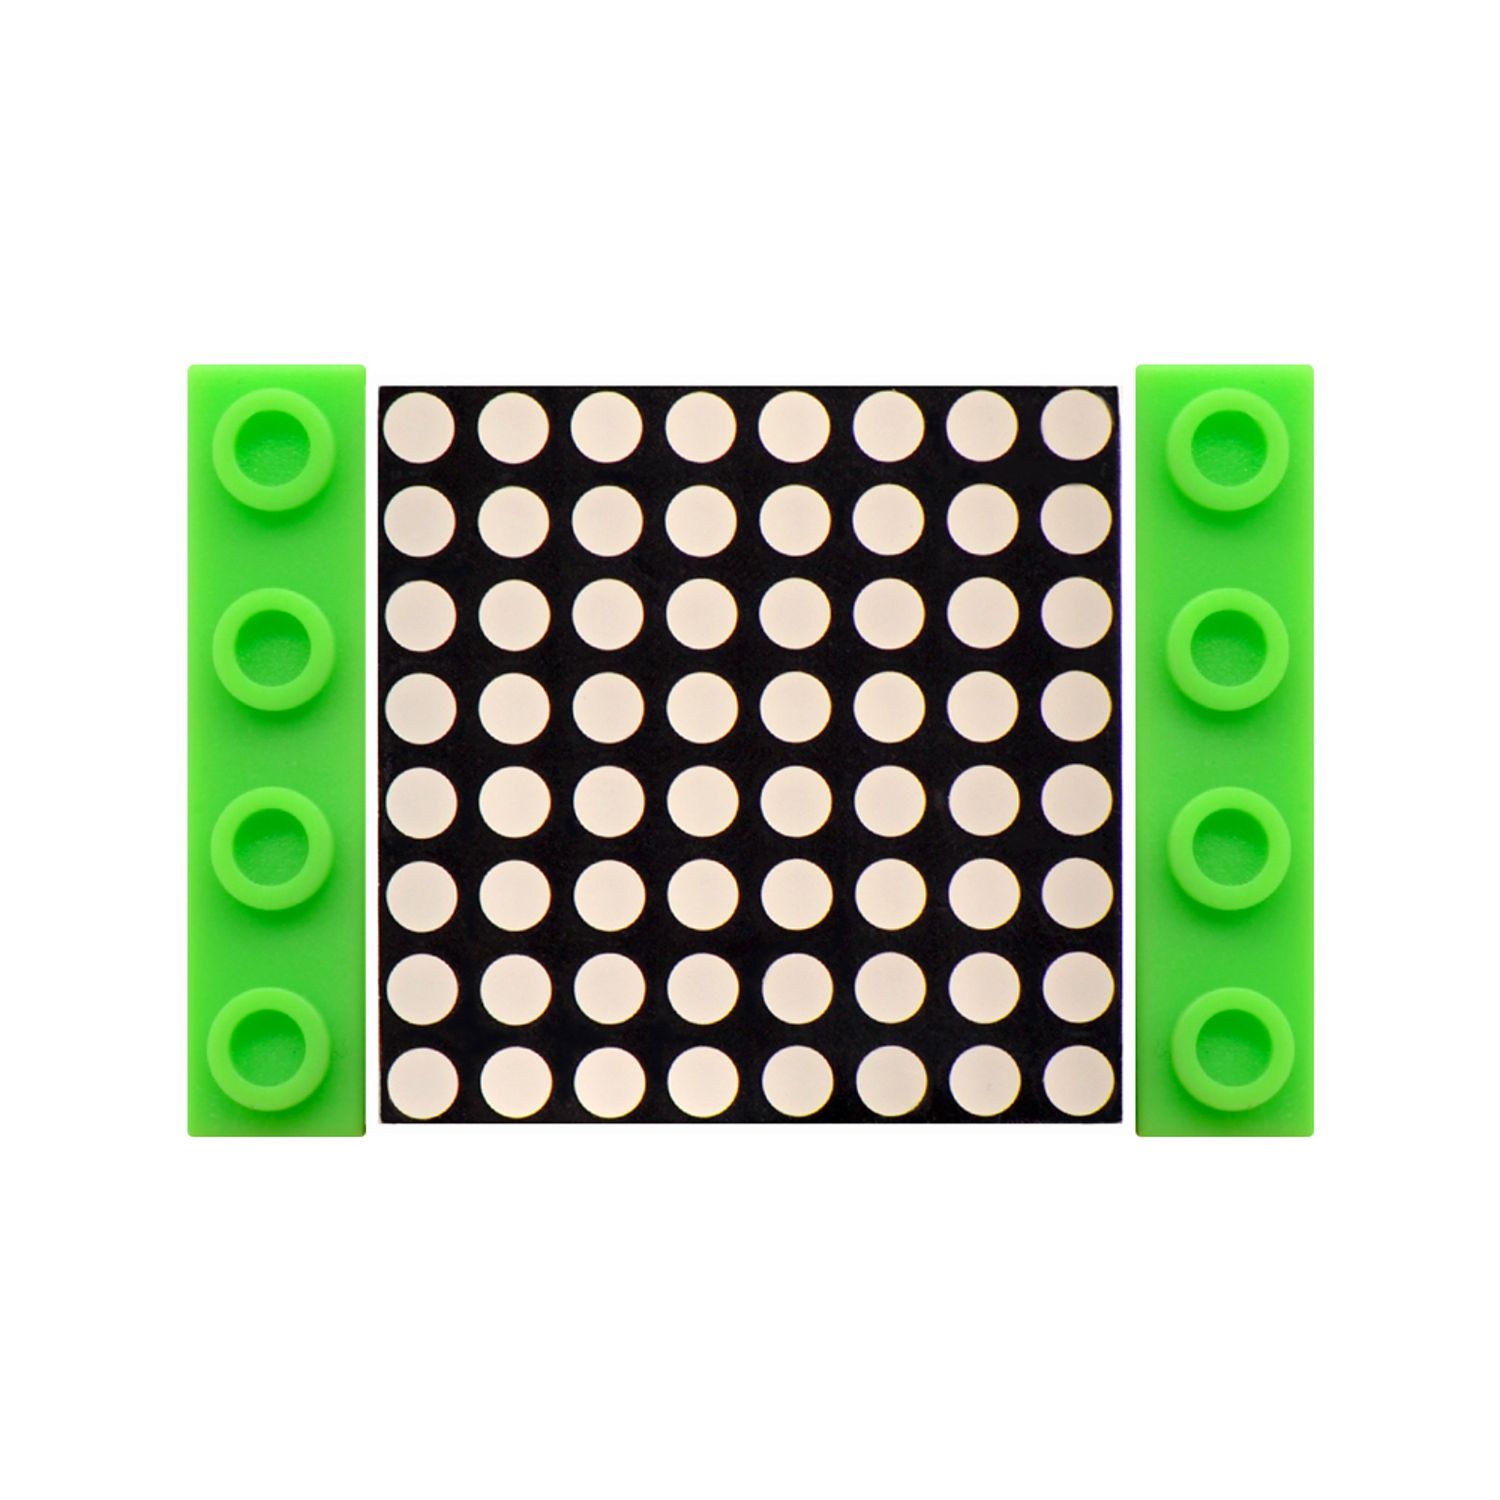 Модуль светодиодной матрицы Kidsbits Lego